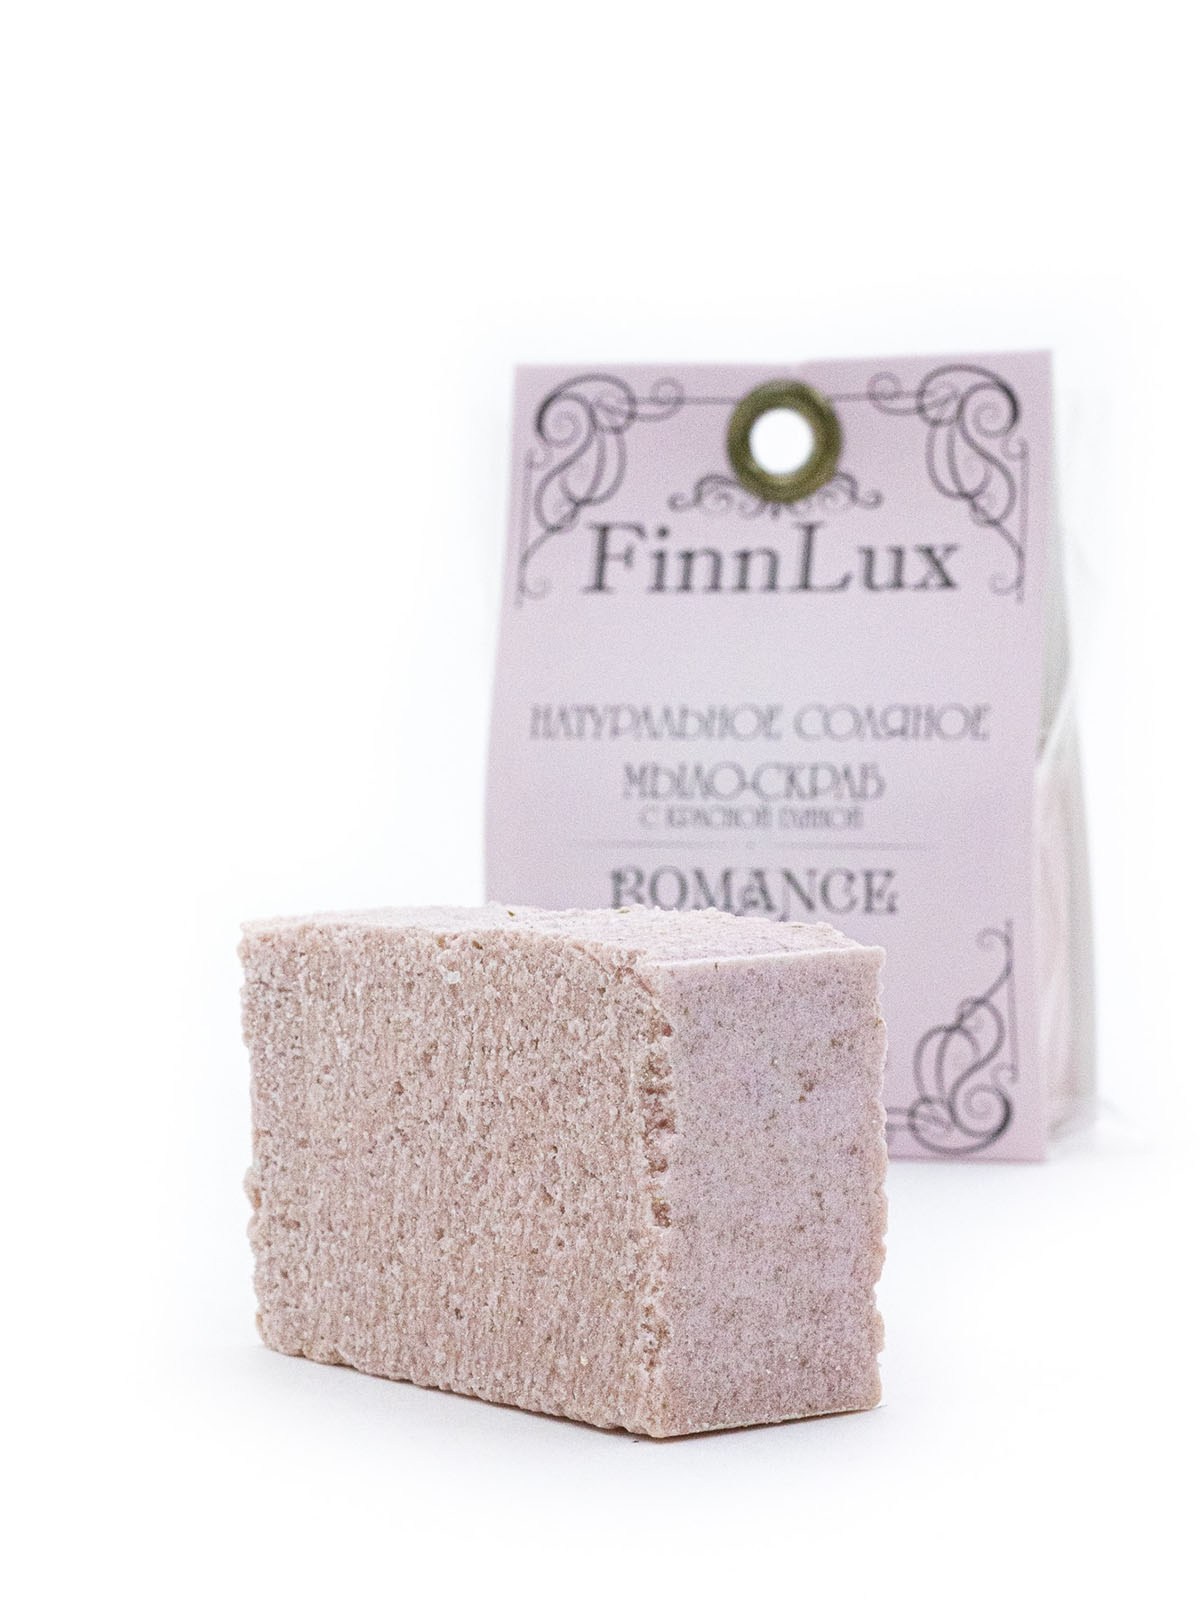 Мыло для рук Finn Lux Соляное ручной работы Romantic с нежным ароматом дикой розы вес 80 гр. - фото 1